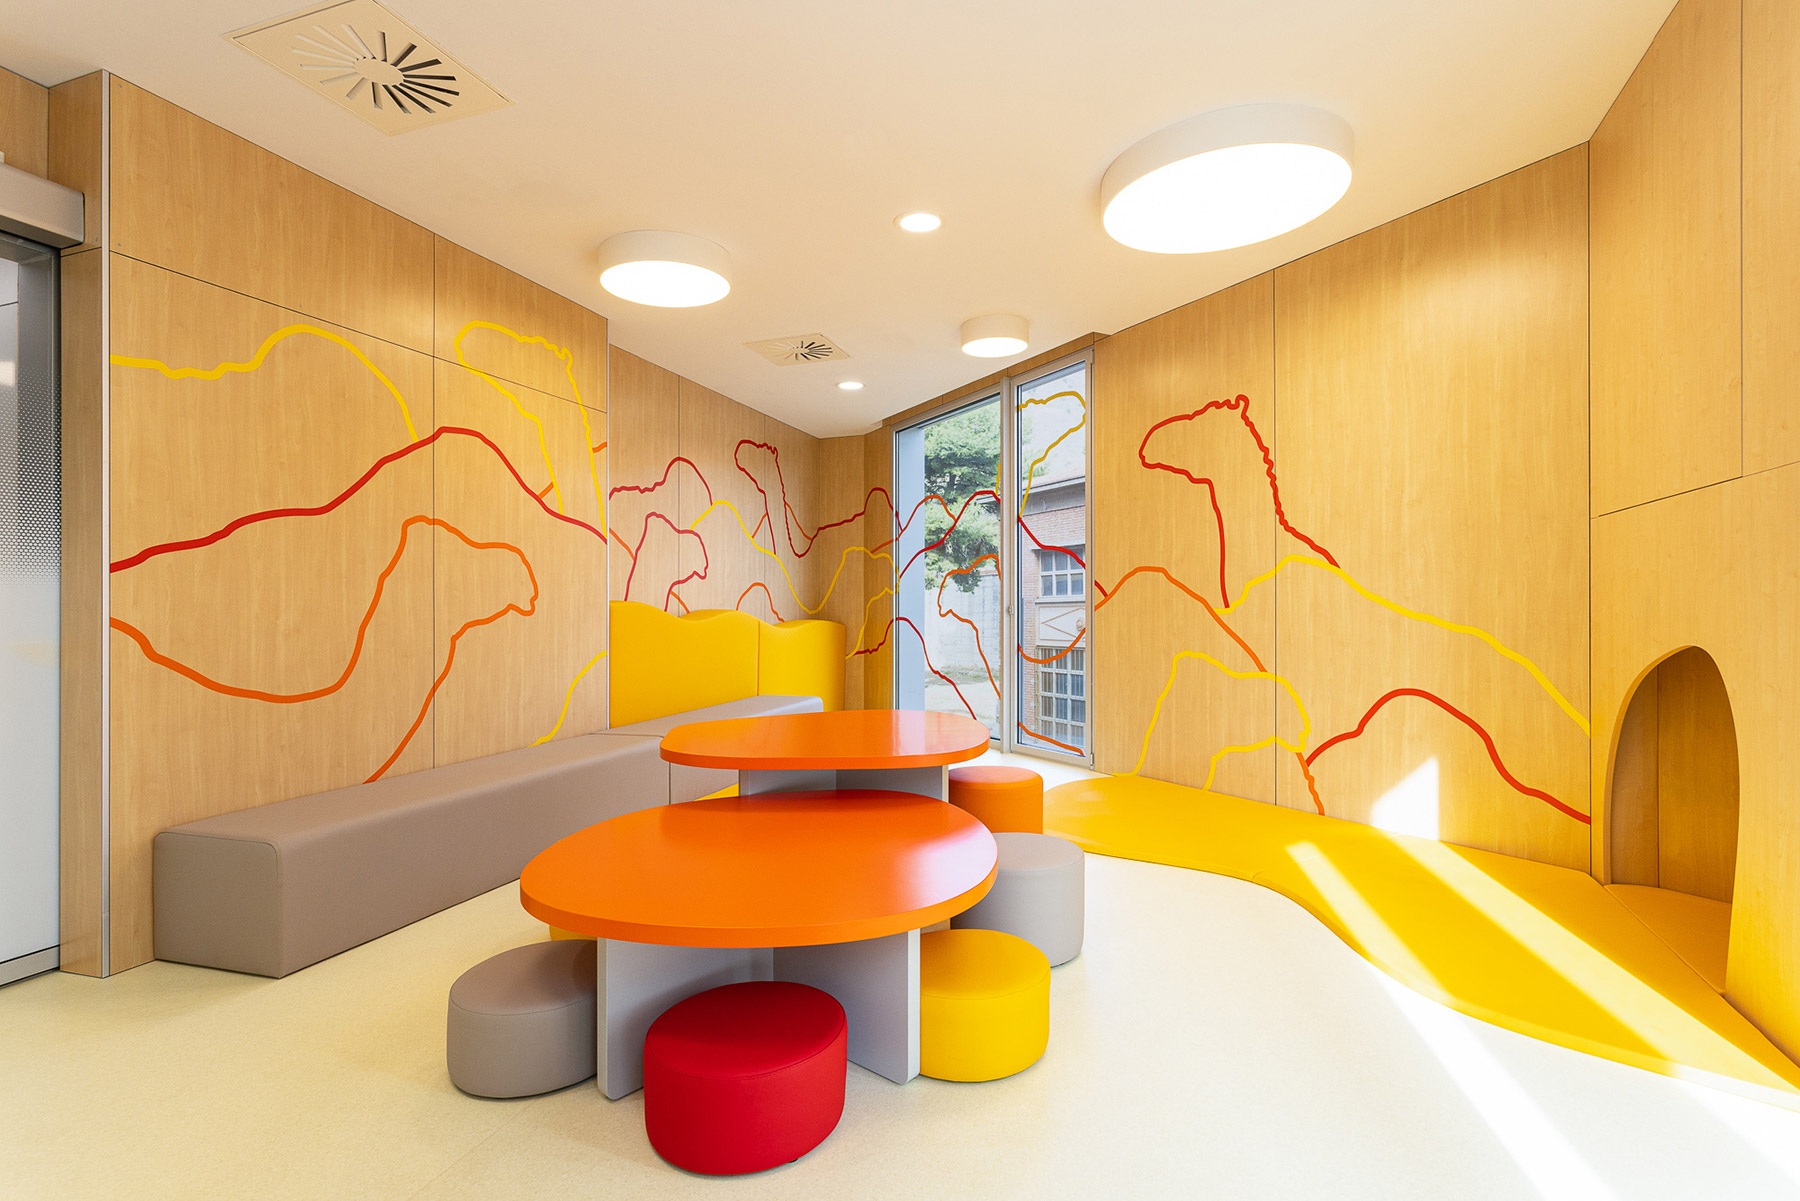 Rai Pinto Studio y Arauna Studio diseñan el Pediatric Cancer Center de Barcelona con el objetivo de humanizar la arquitectura del hospital, adaptándola a las necesidades infantiles